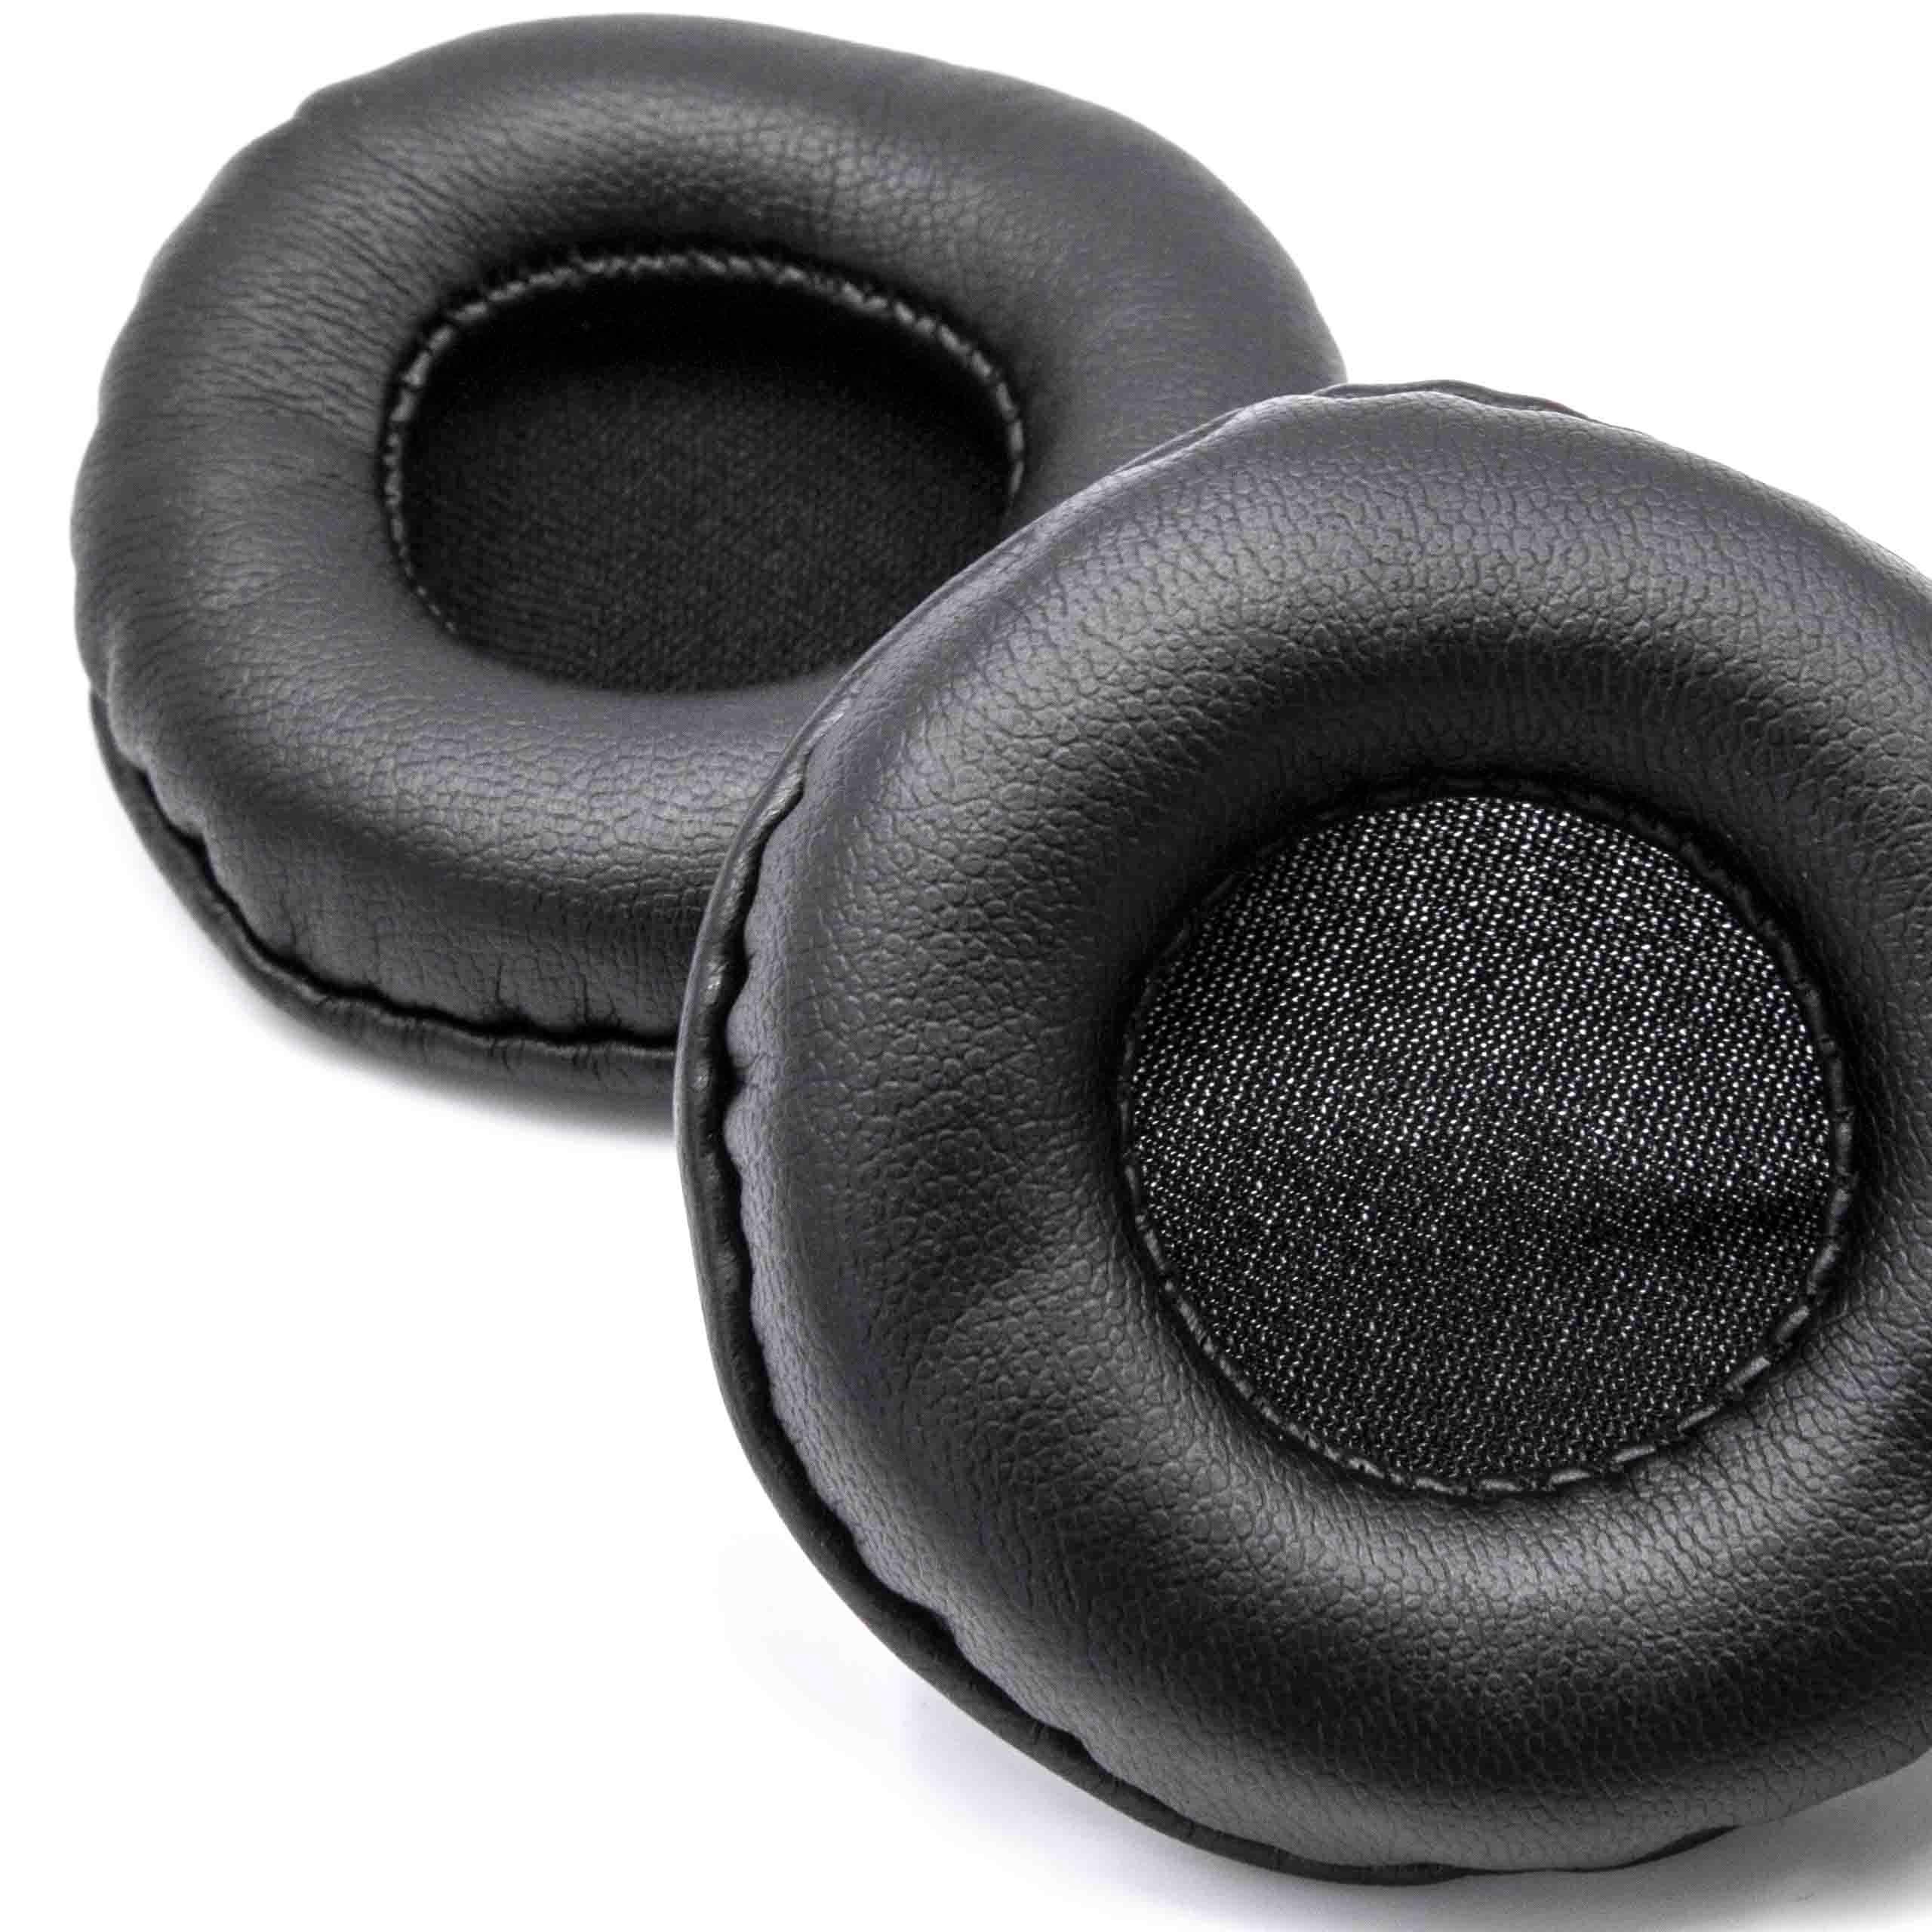 2x Ohrenpolster passend für ATH / Kopfhörer, die 60mm Ohrpolster benötigen / Sony ES55 Kopfhörer u.a. - Polyur